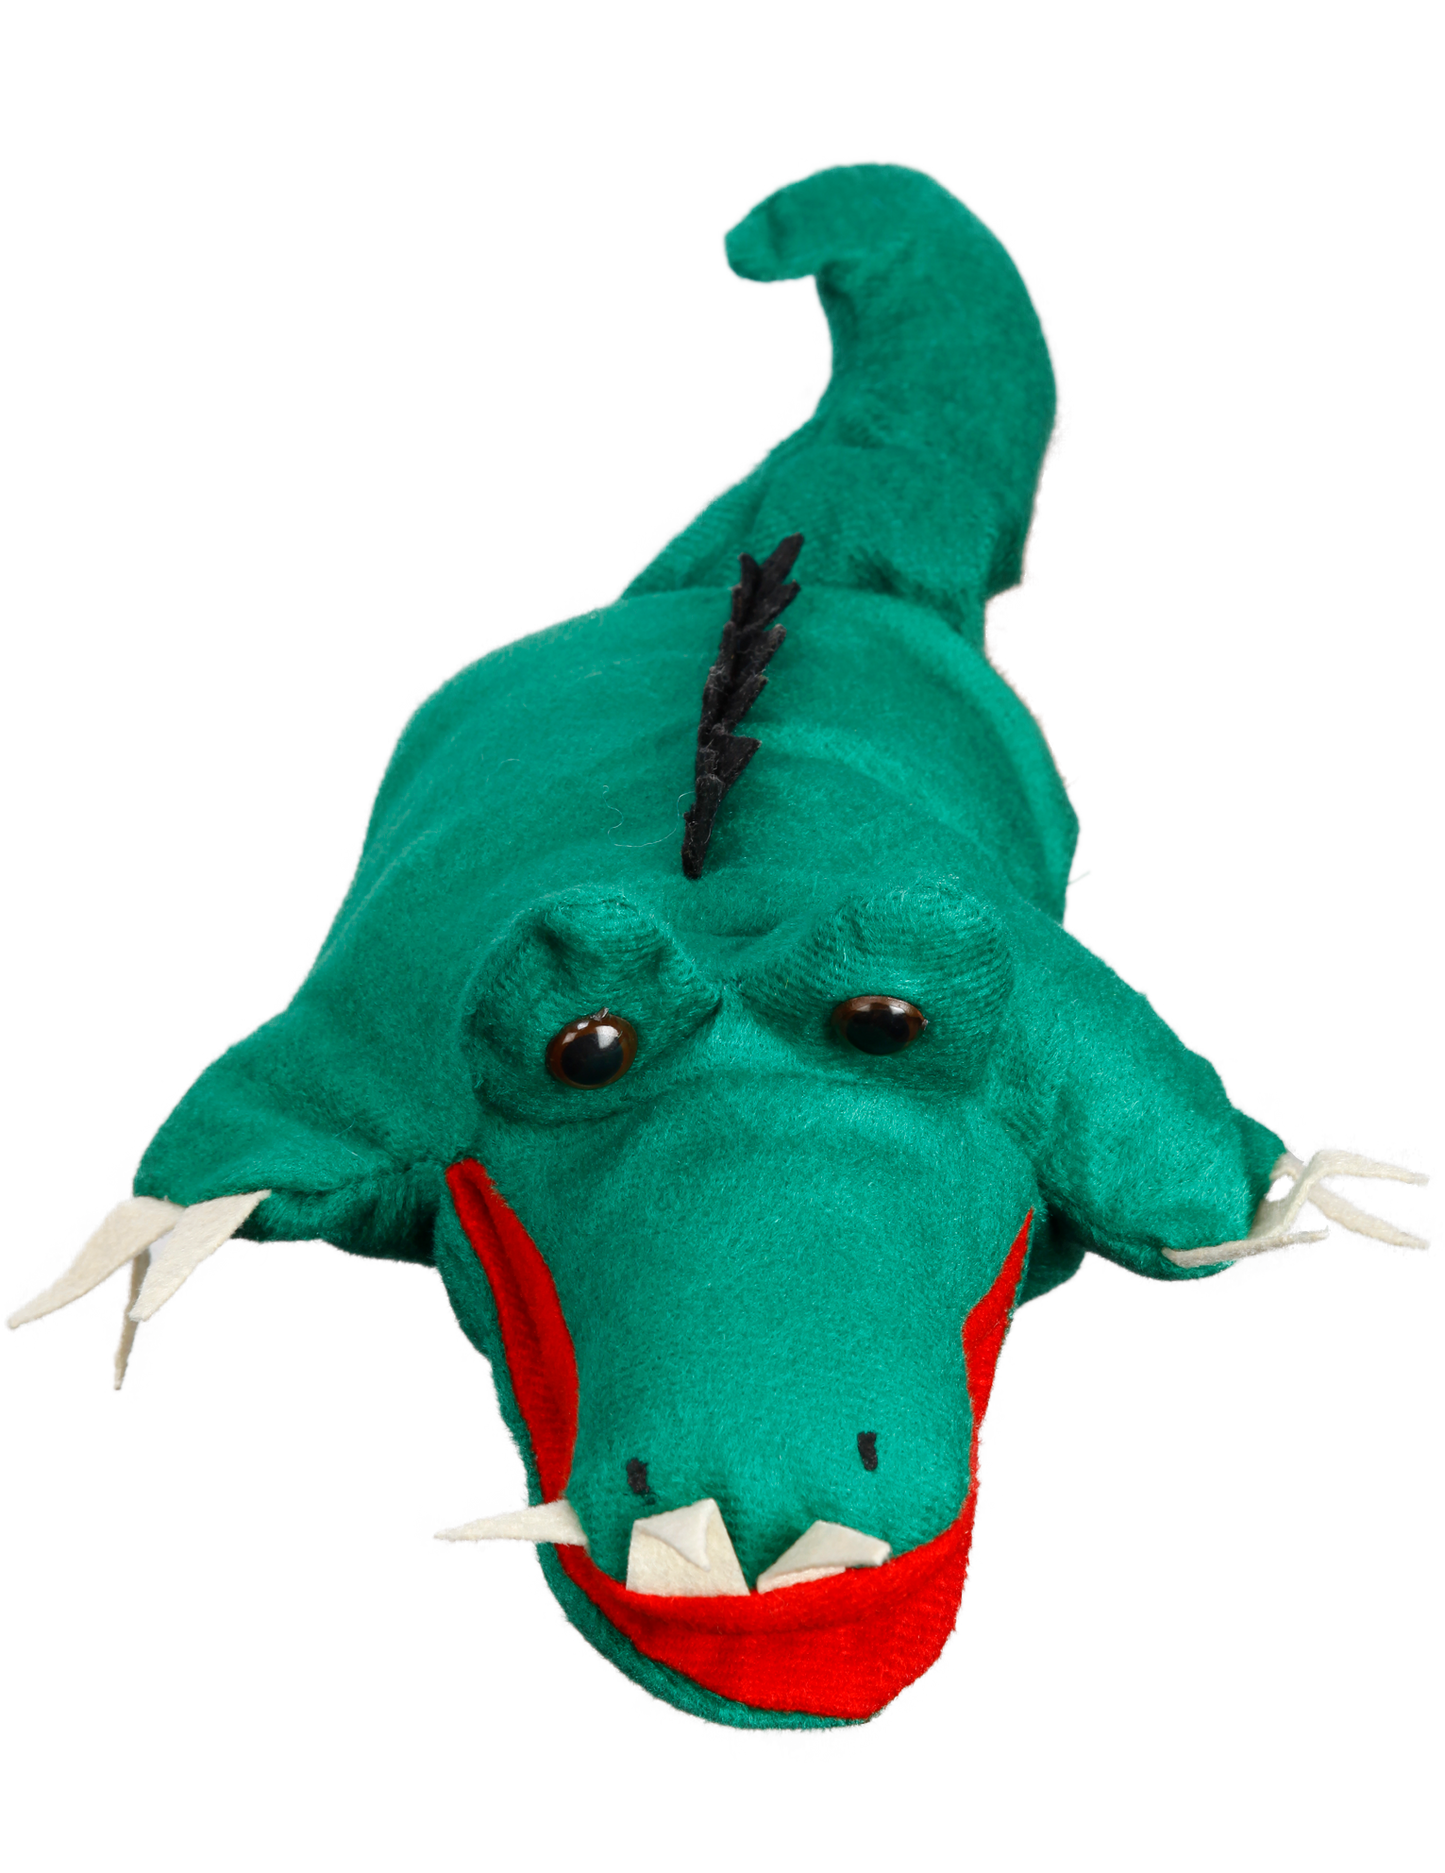 Vr/Glove Puppet Alligator